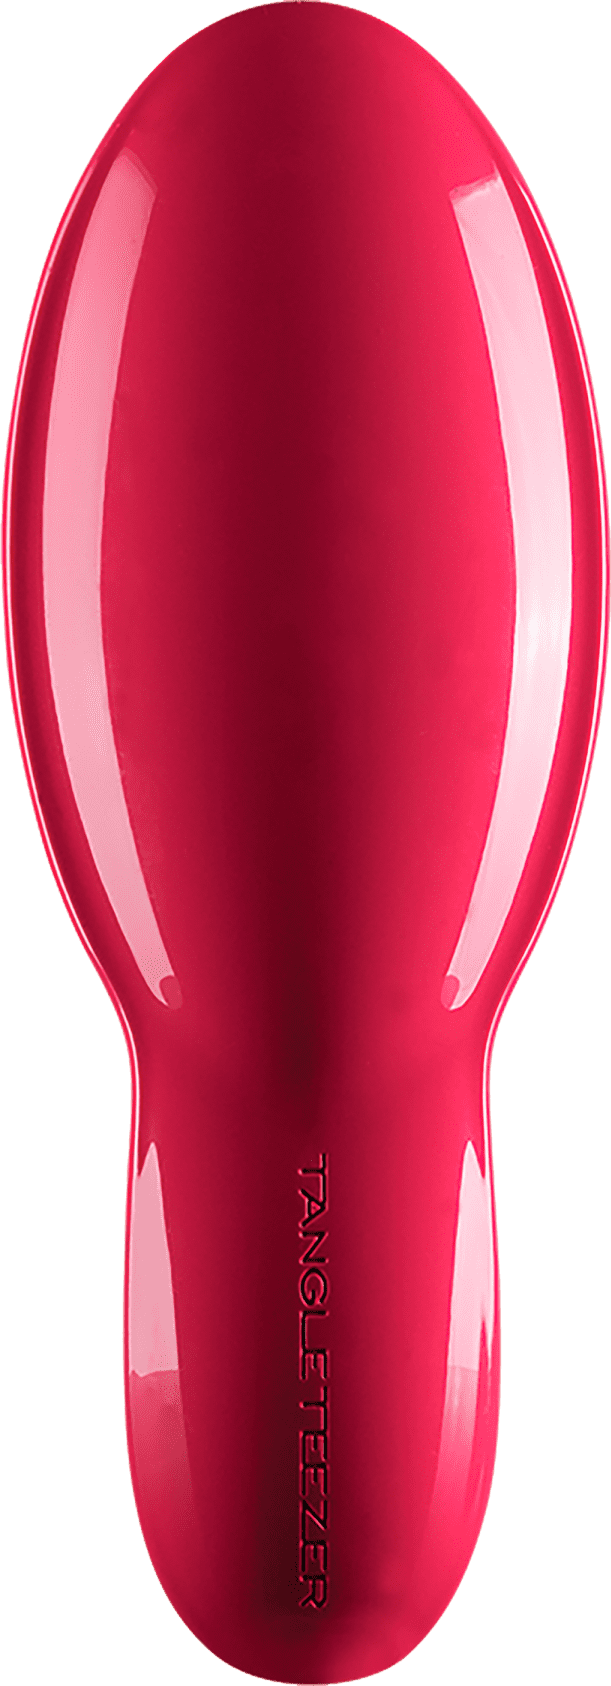 Escova Tangle Teezer - The Ultimate Pink - Clube Raiz - Cosméticos Naturais